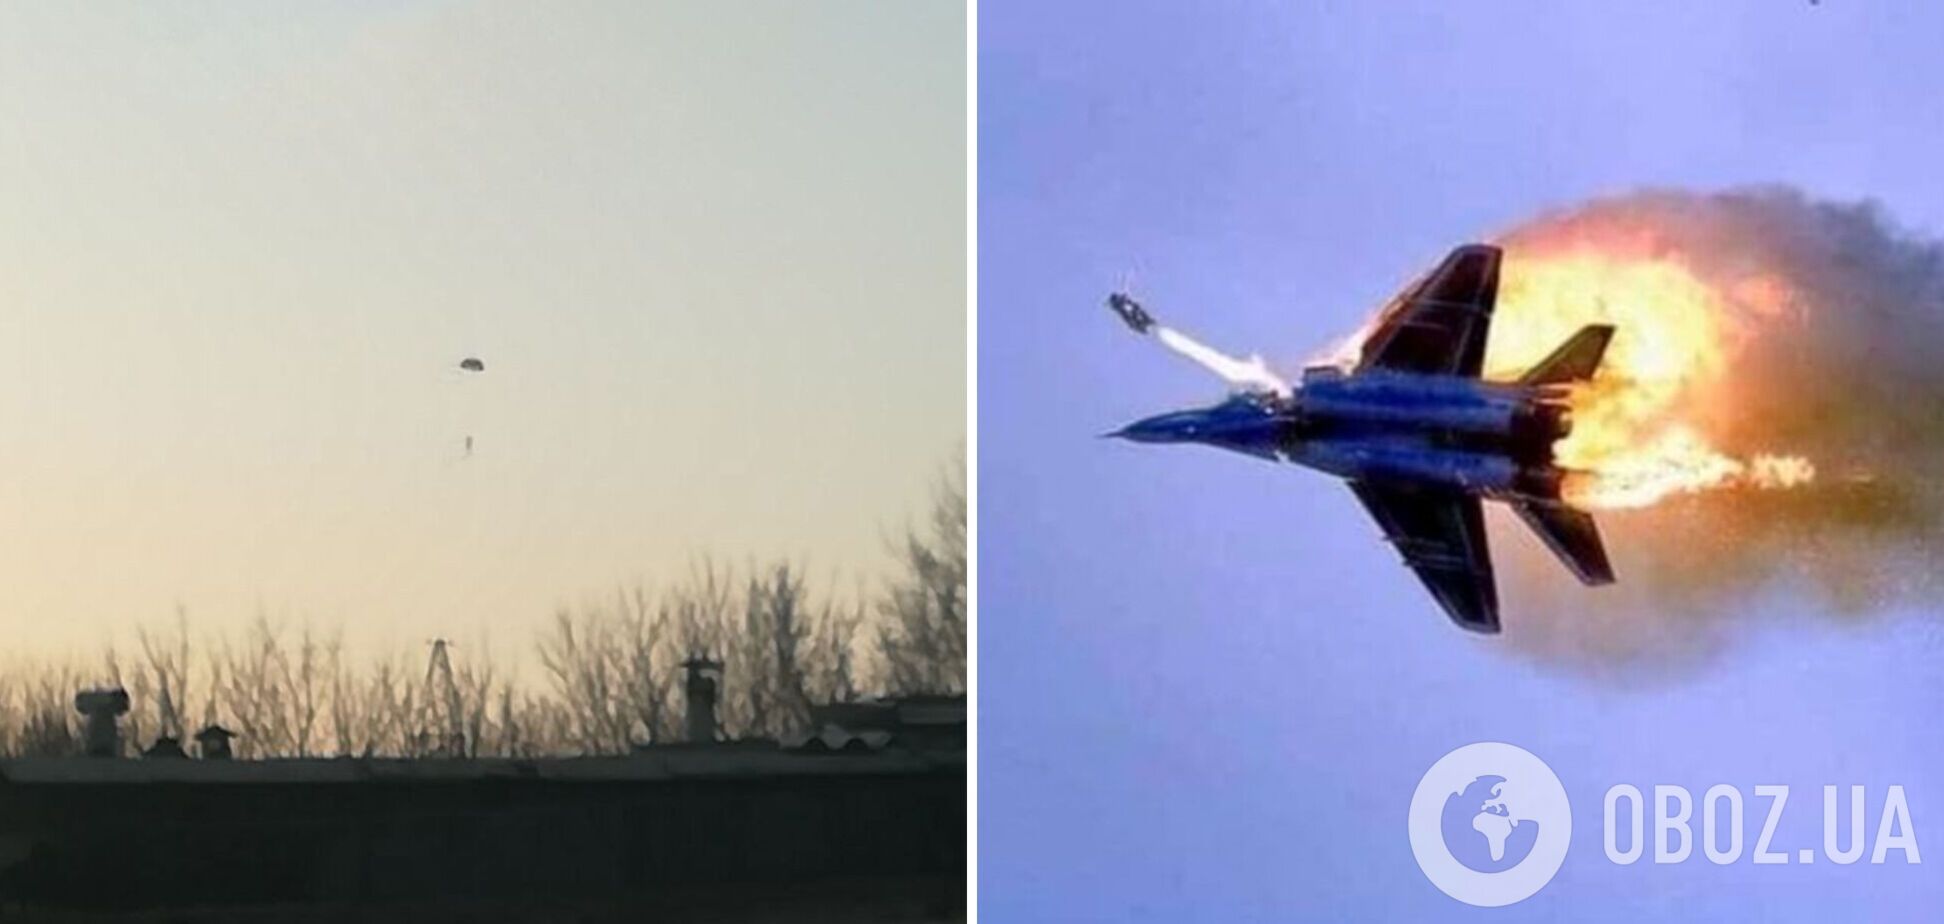 Оккупанты из систем ПВО сбили российский самолет над Донецком. Фото и видео